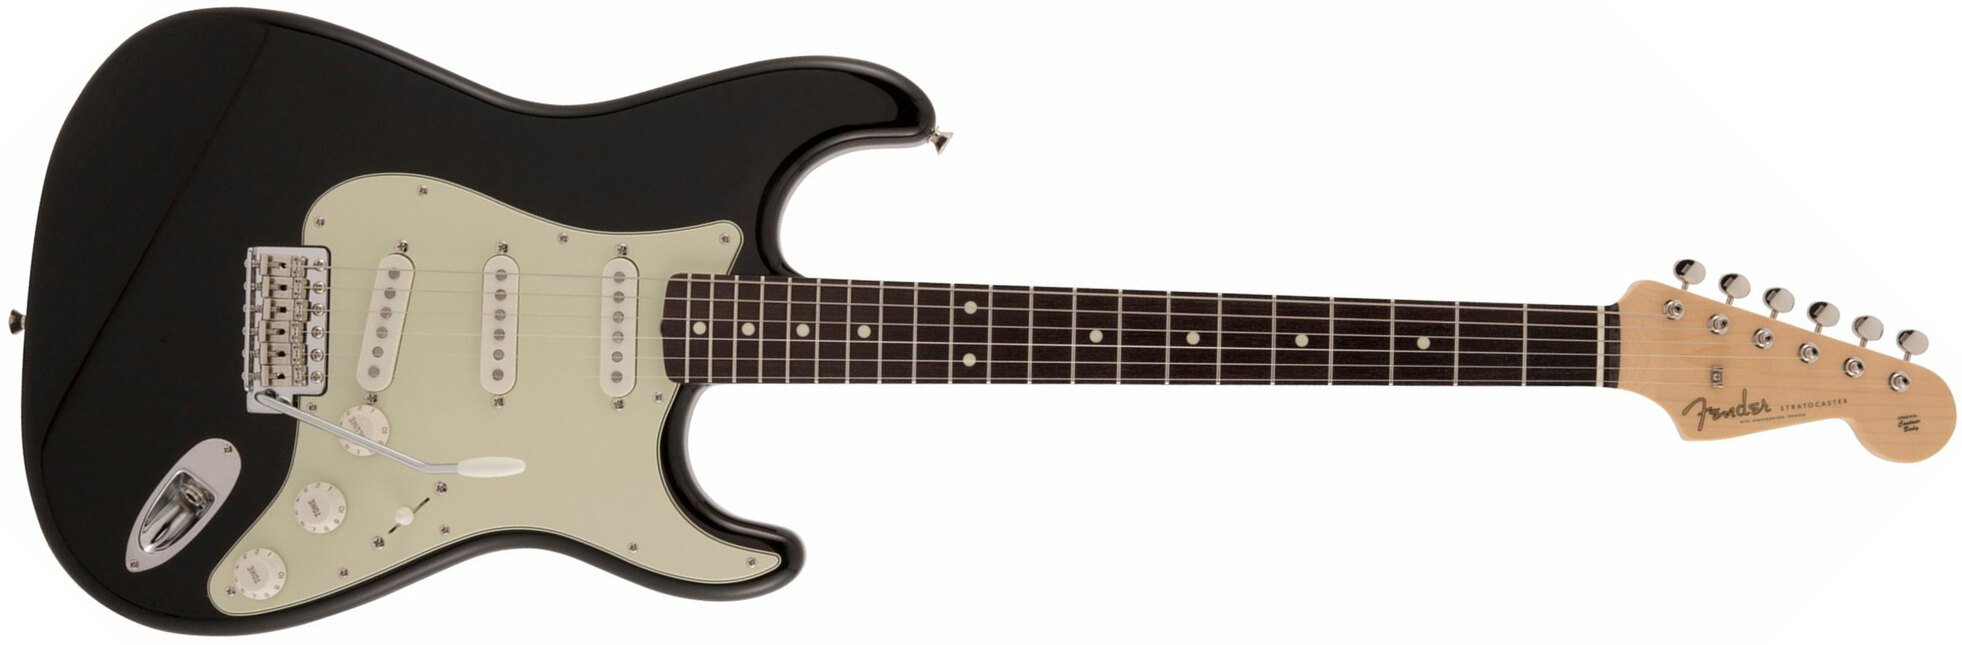 Fender Strat Traditional Ii 60s Mij Jap 3s Trem Rw - Black - Guitare Électrique Forme Str - Main picture